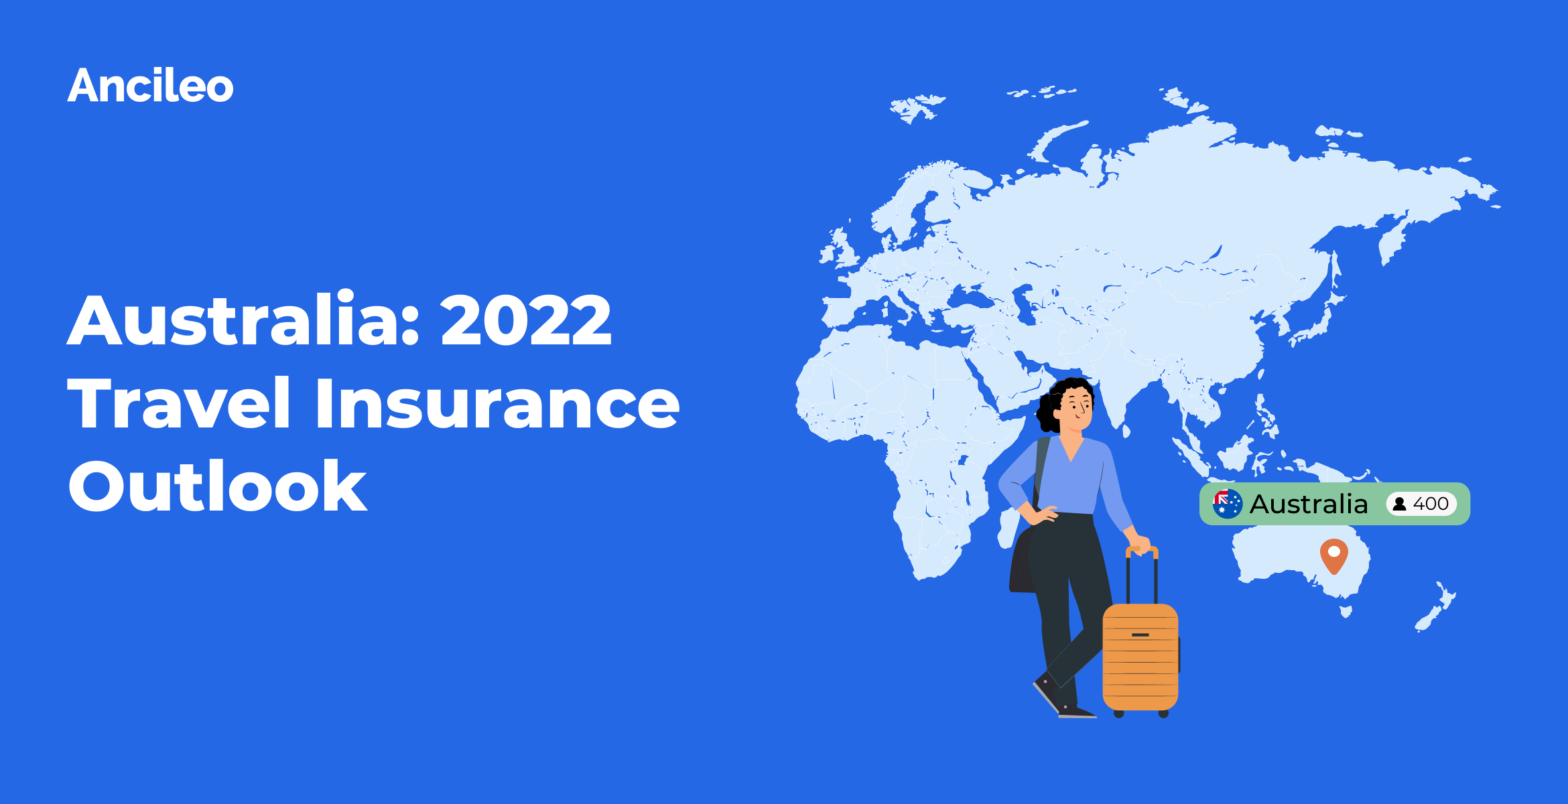 Australia: 2022 Travel Insurance Outlook